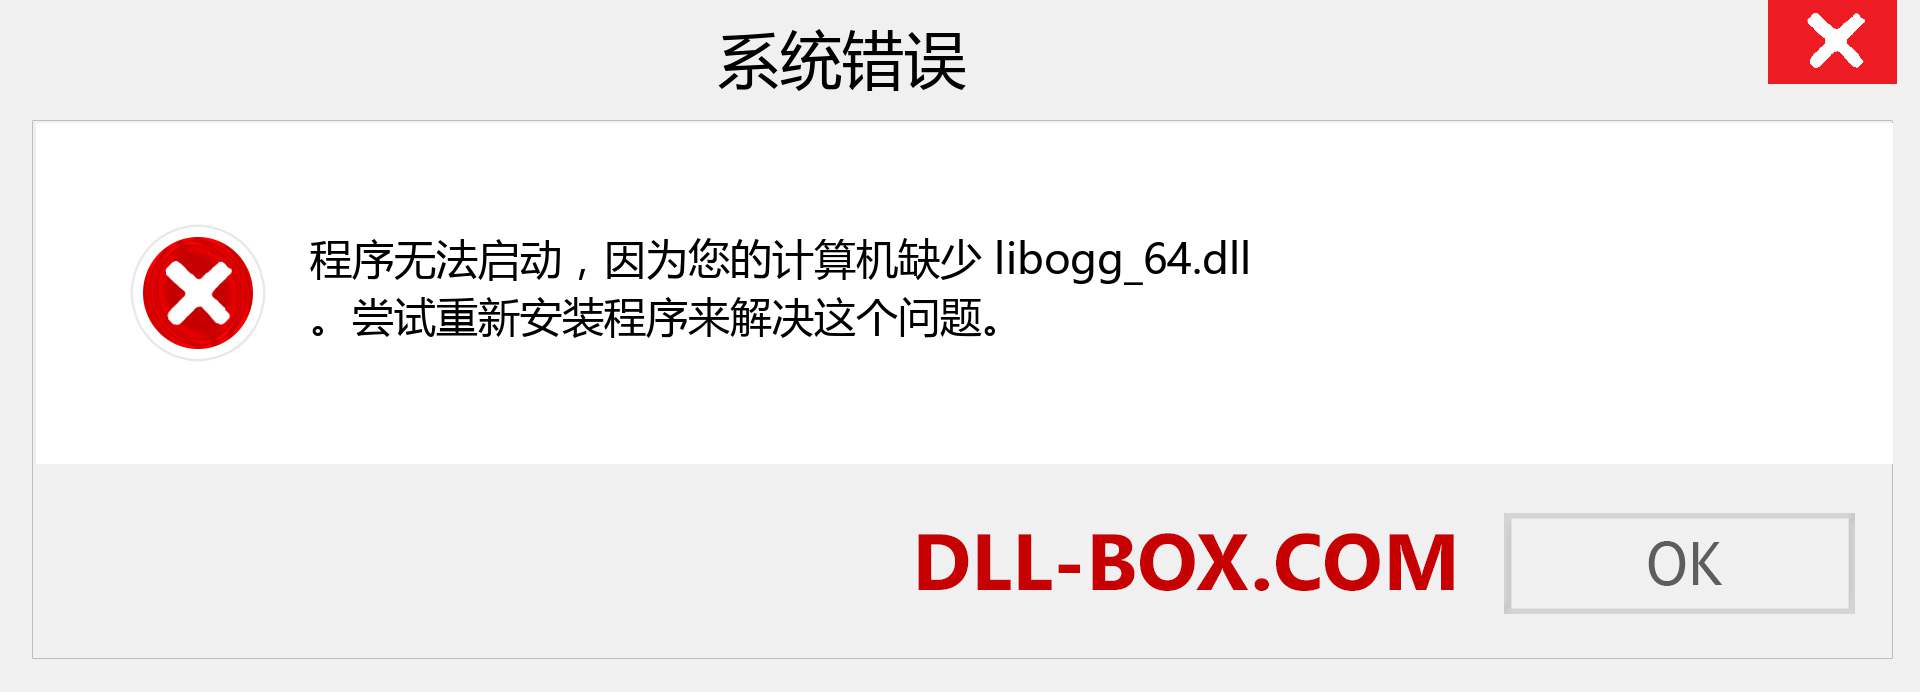 libogg_64.dll 文件丢失？。 适用于 Windows 7、8、10 的下载 - 修复 Windows、照片、图像上的 libogg_64 dll 丢失错误